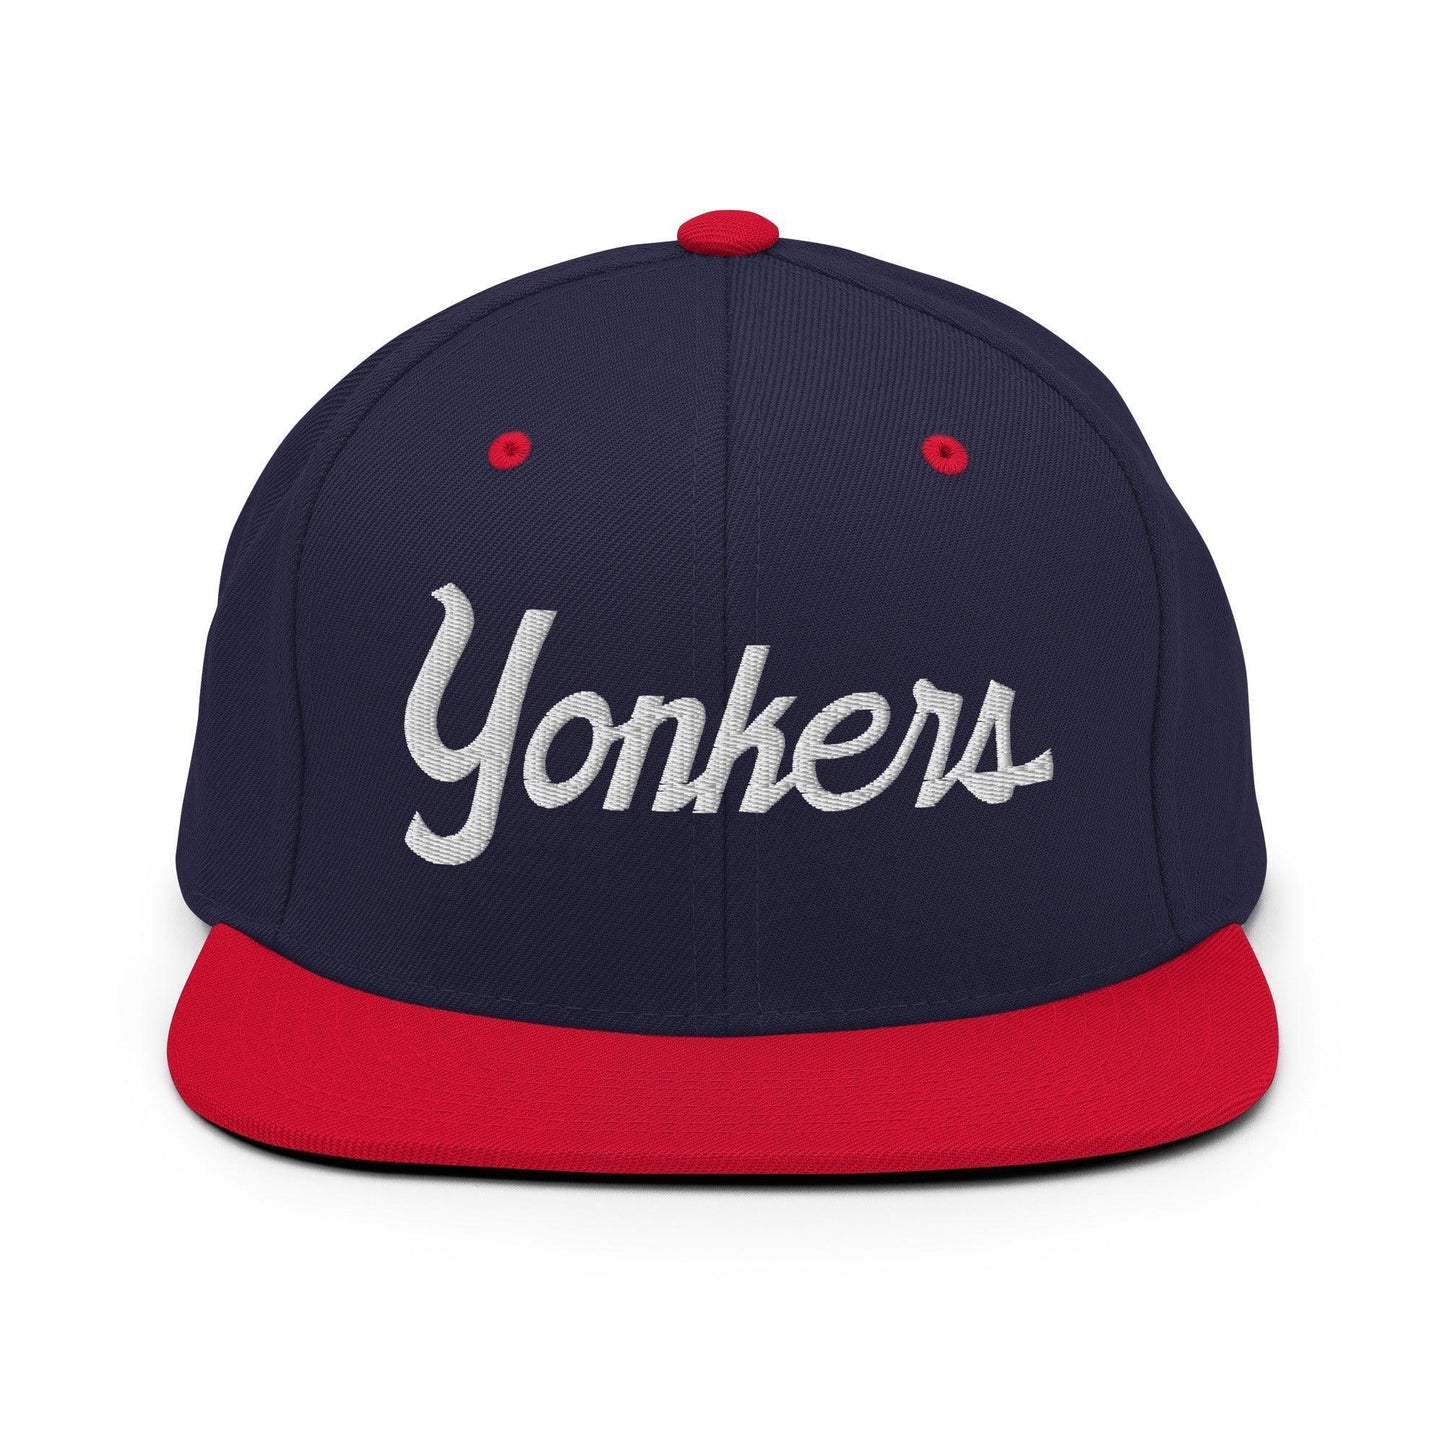 Yonkers Script Snapback Hat Navy/ Red